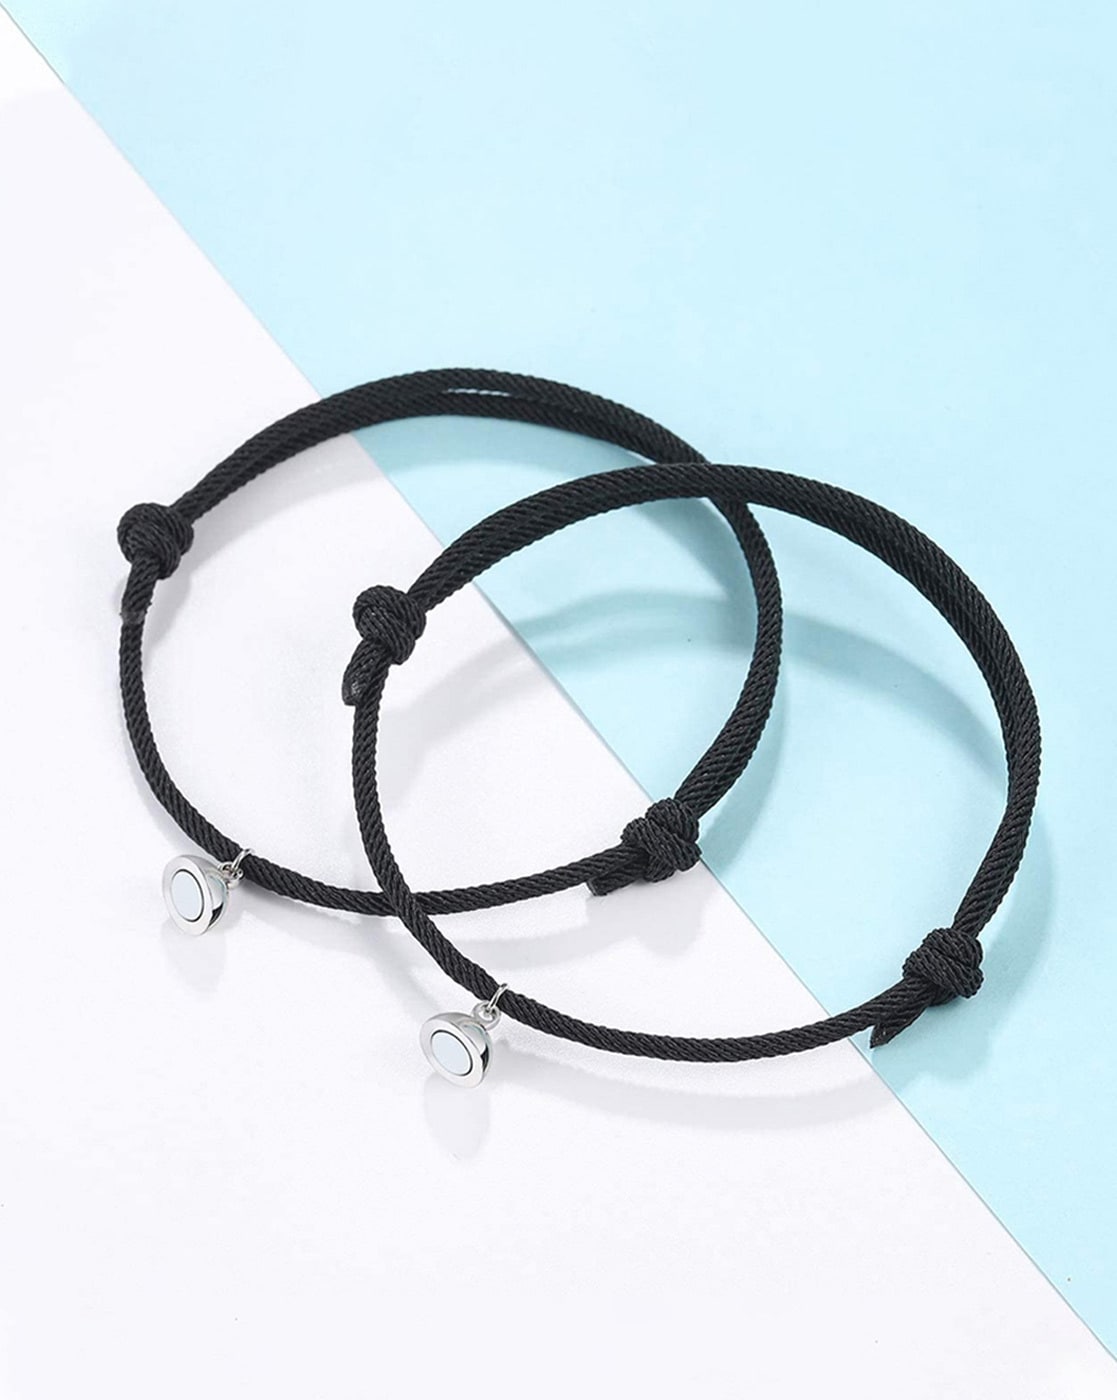 Buy DEALNUT Magnetic Couple Bracelets for Women Men, Bracelet Lover Gifts  for Boyfriend Girlfriend Best Friend at Amazon.in